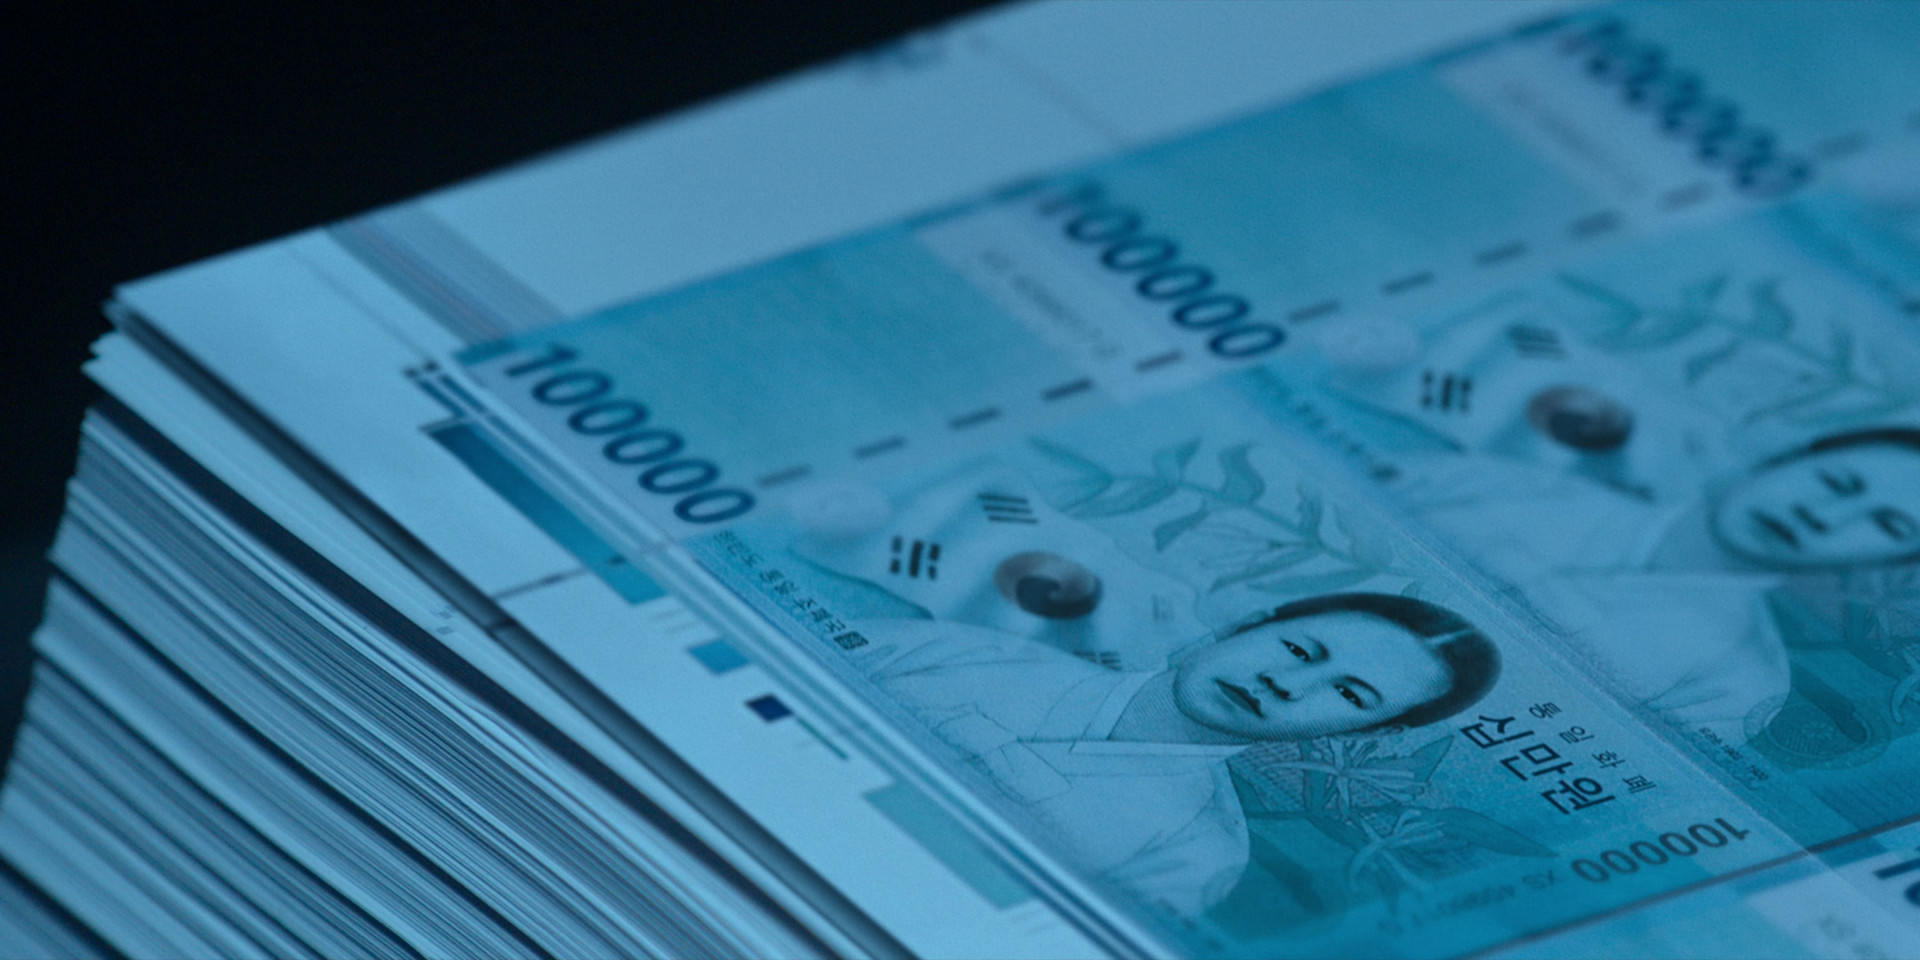 10萬元面額紙鈔上的代表人物為韓國獨立建國烈士柳寬順女士